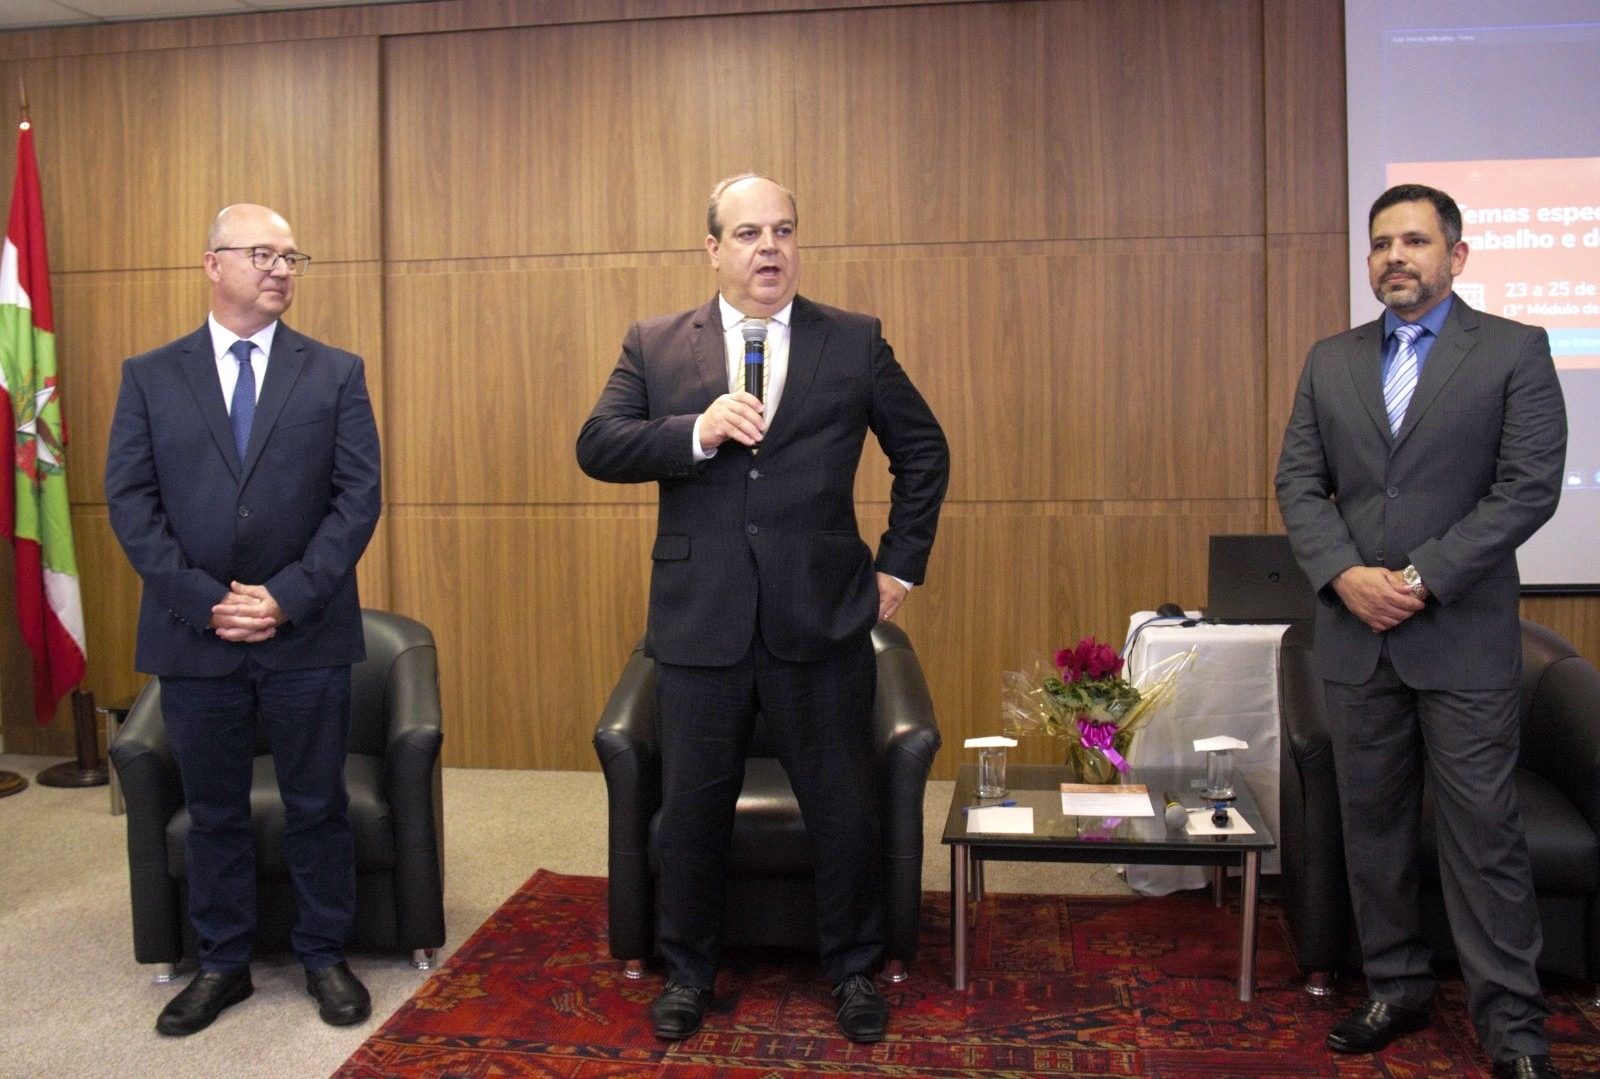 Três homens de terno e gravata em pé, na frente de um auditório. O homem do meio está segurando um microfone e falando.